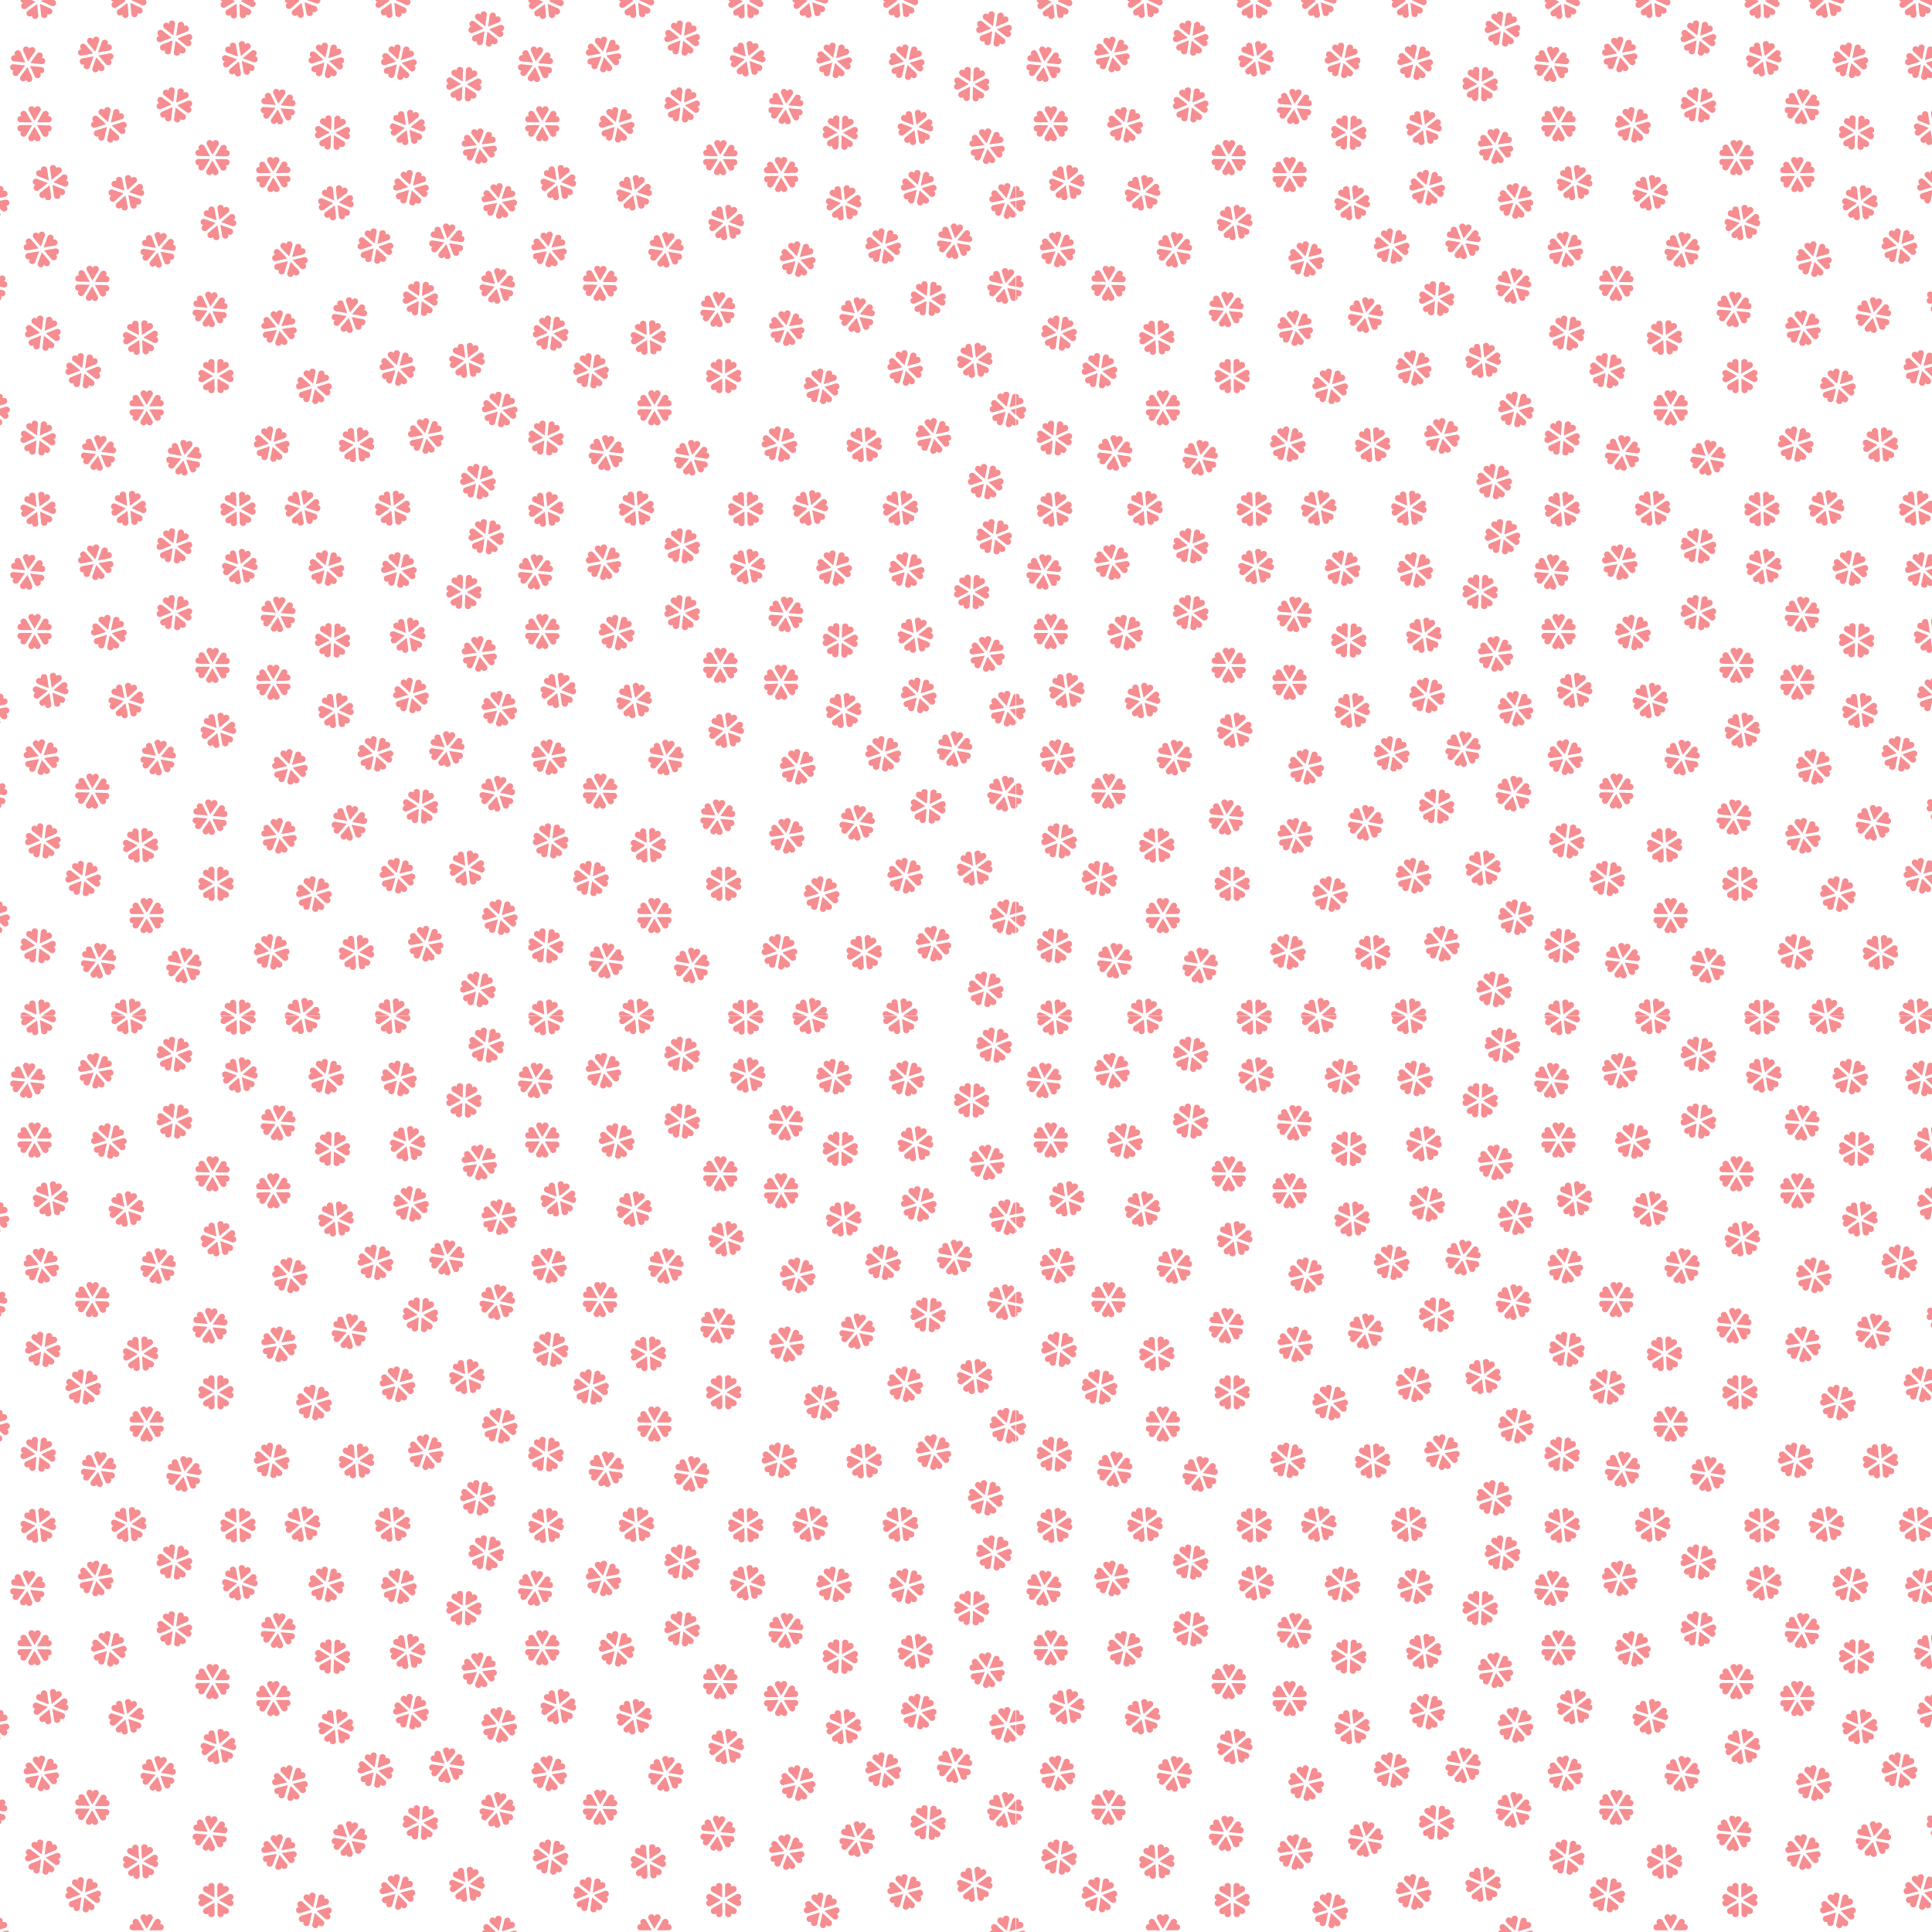 壁紙 背景イラスト 花の模様 柄 パターン No 070 赤花びら たくさん 薄め